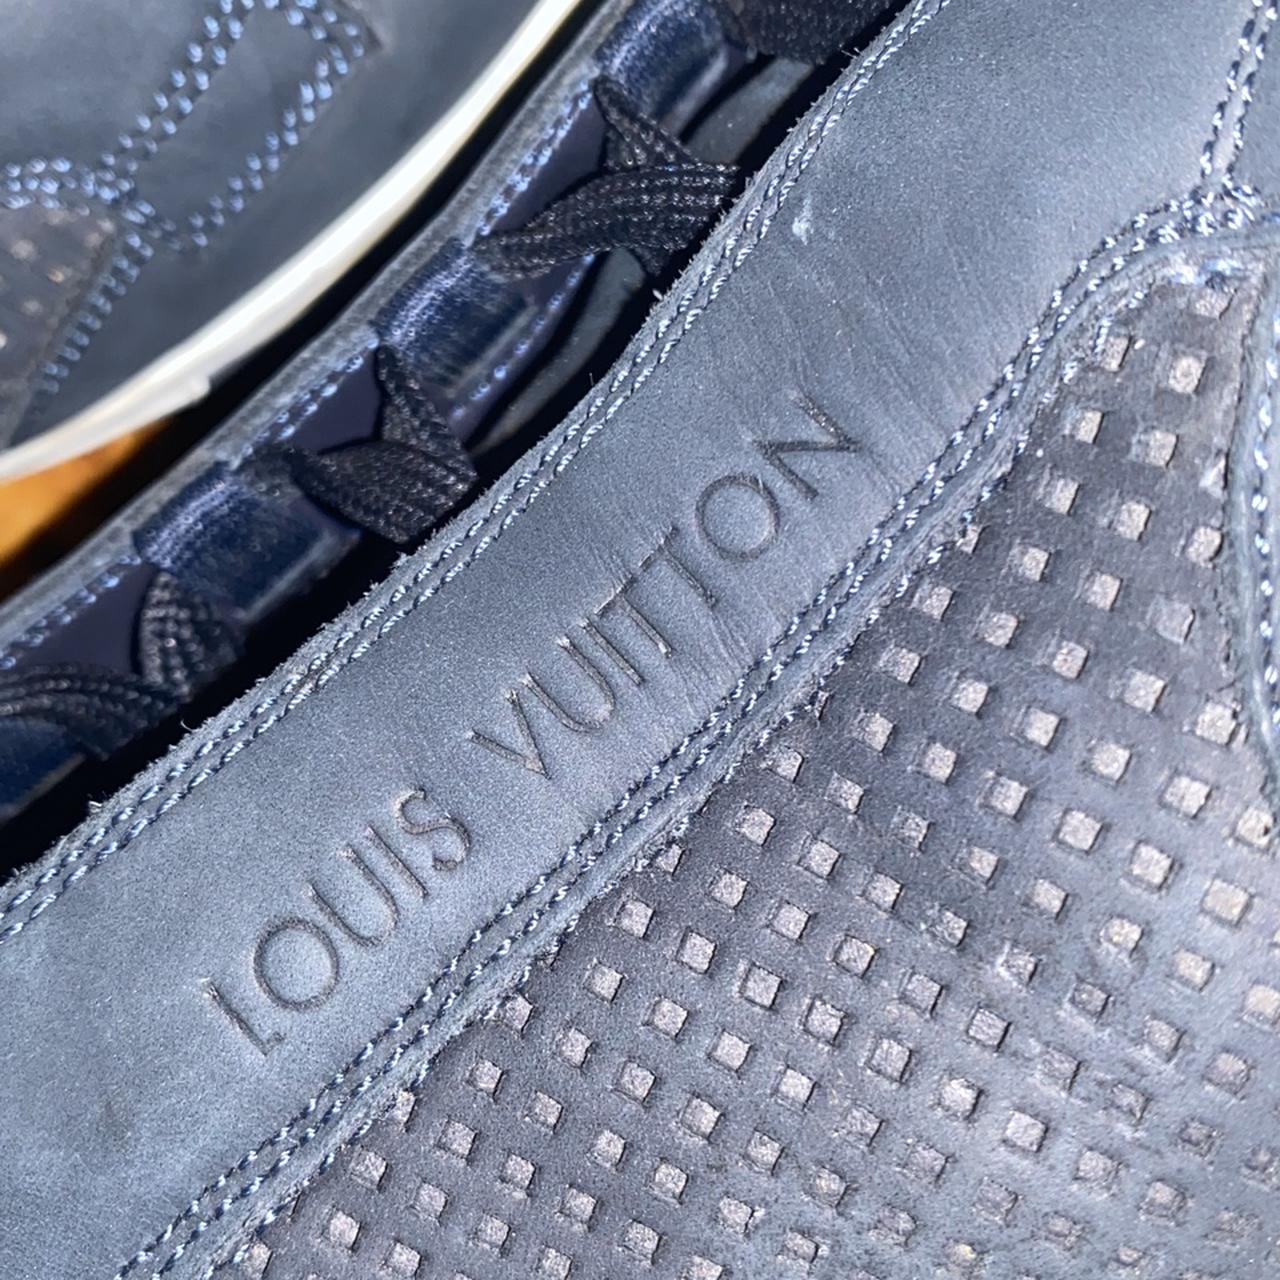 Louis Vuitton Blue Leather Luggage Tag Color: Blue - Depop